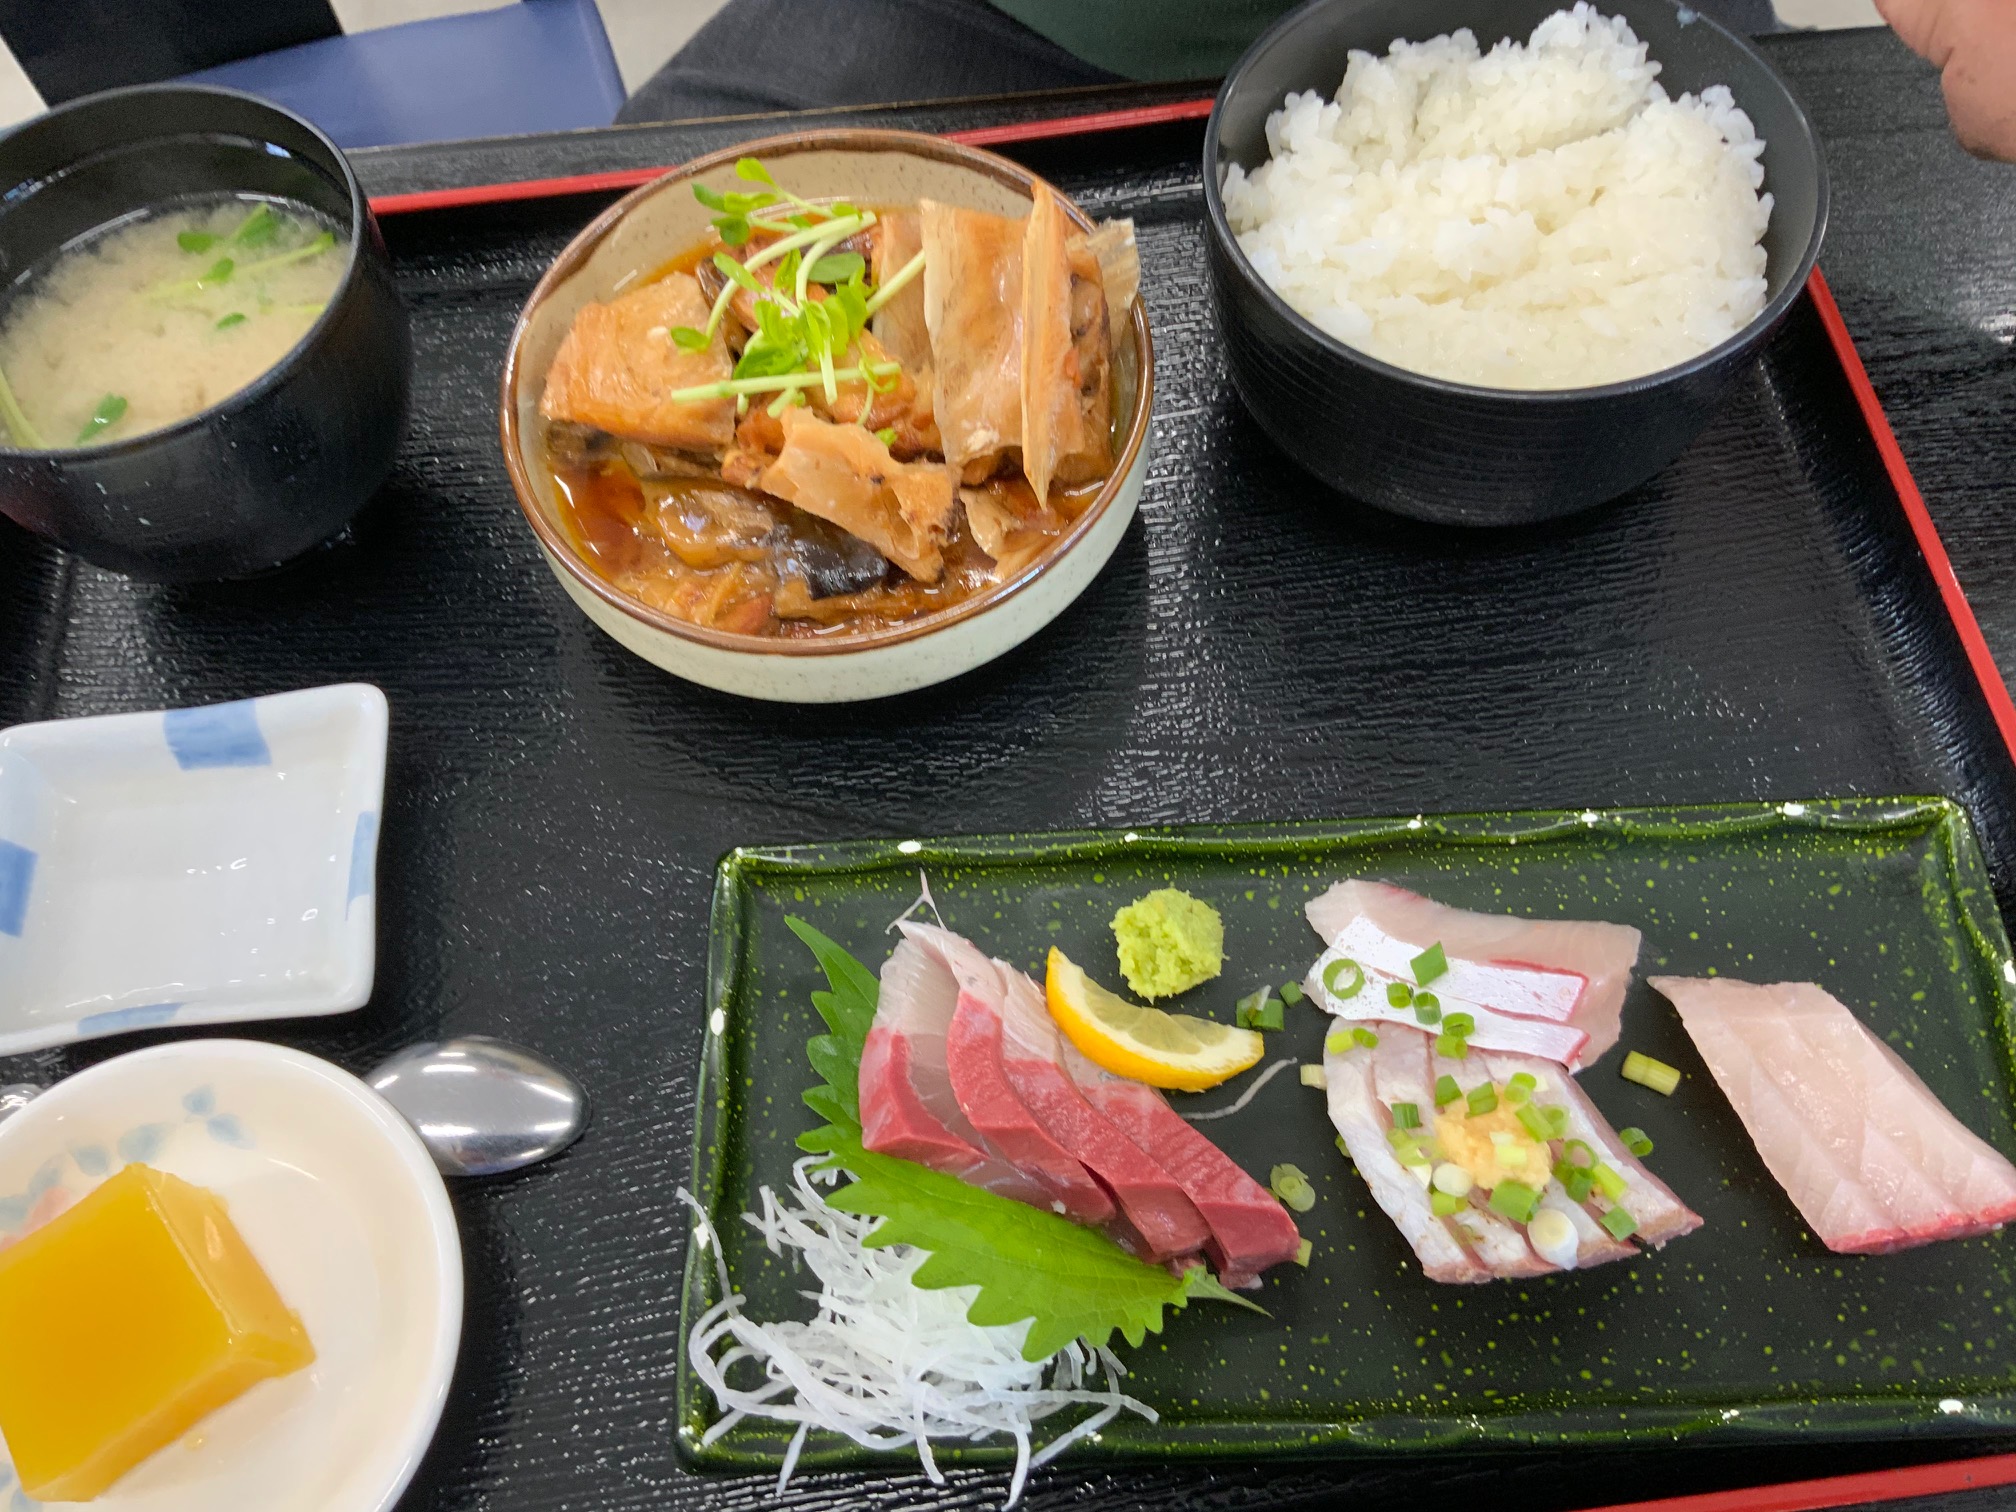   長島大陸食堂で日本一のぶりの鰤王の定食を食べてきました。大人気のお店ですが